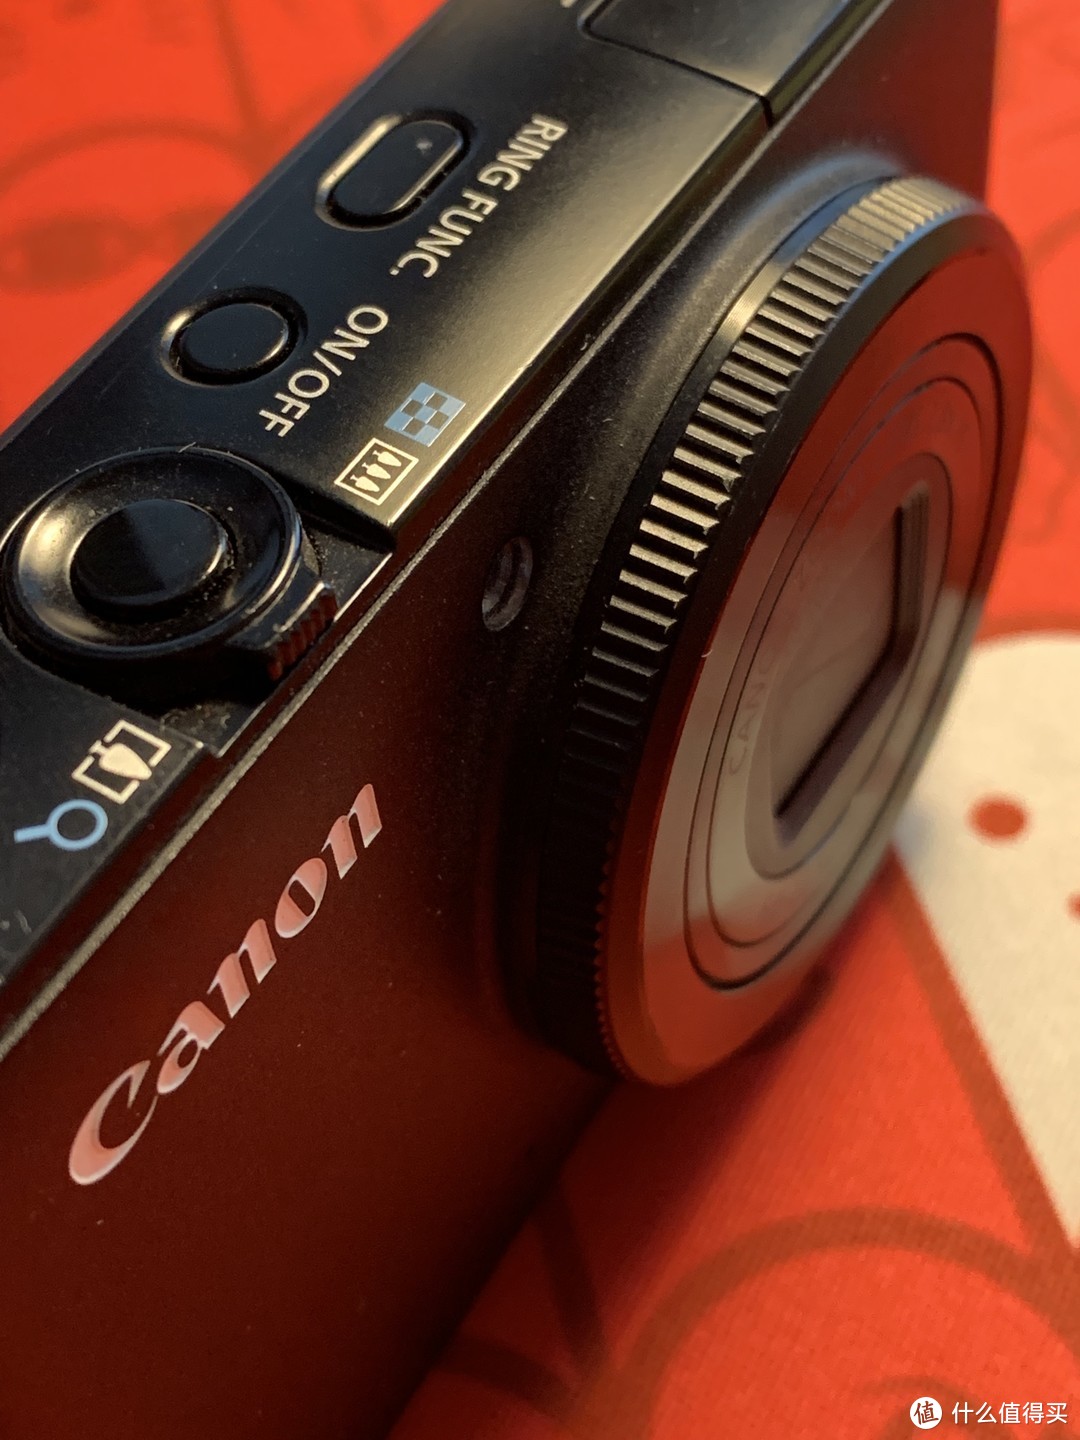 Canon 佳能 Powershot S95